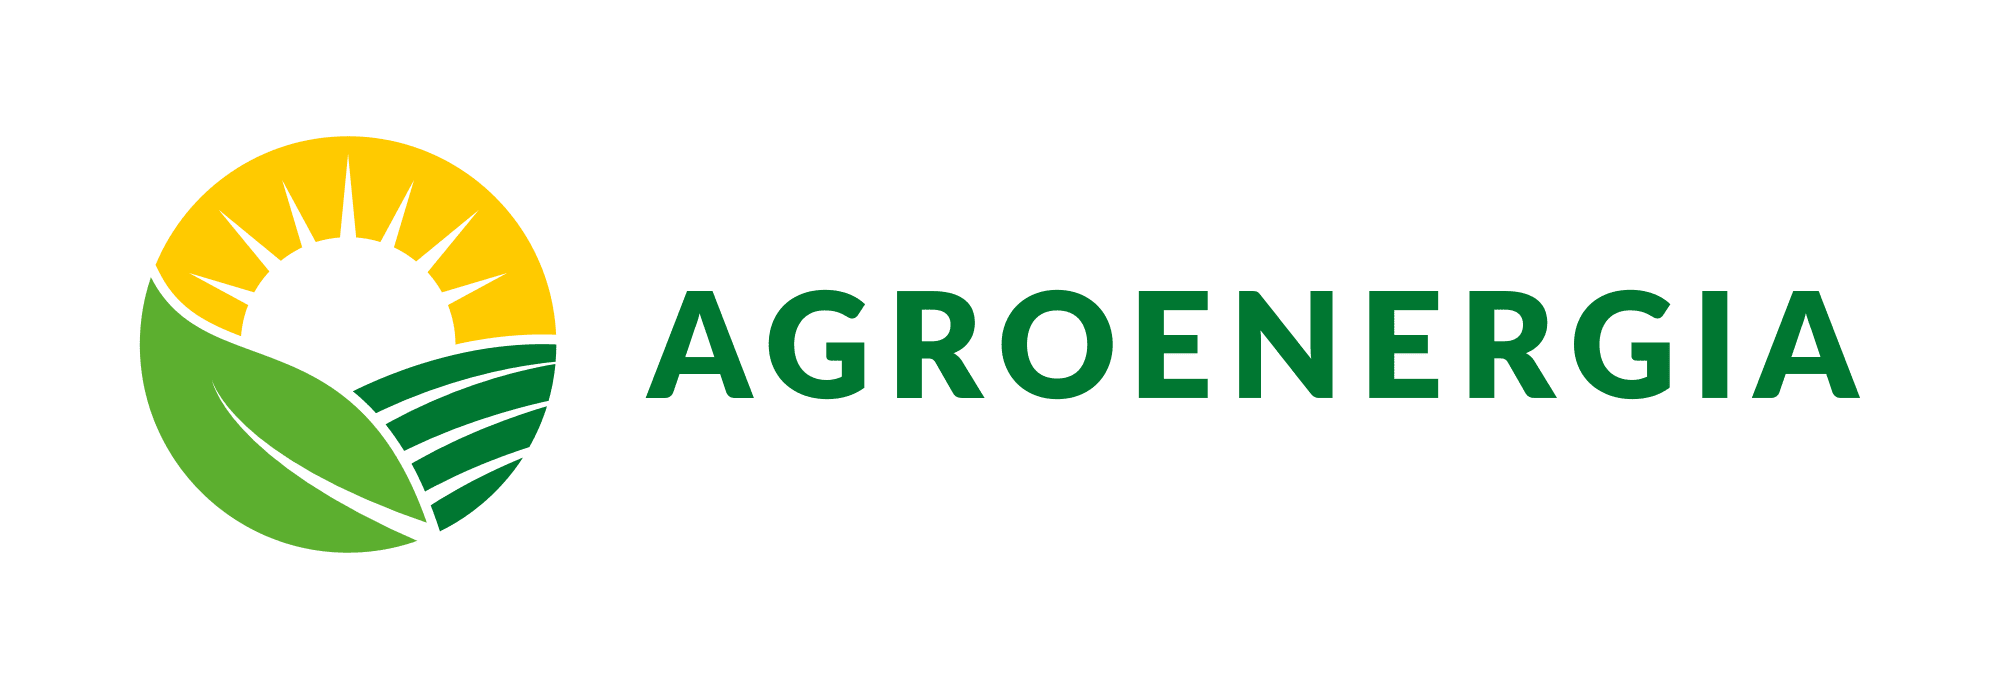 Agroenergia nowe zasady na 2021 – czyli ile wynoszą dopłaty do fotowoltaiki dla rolników